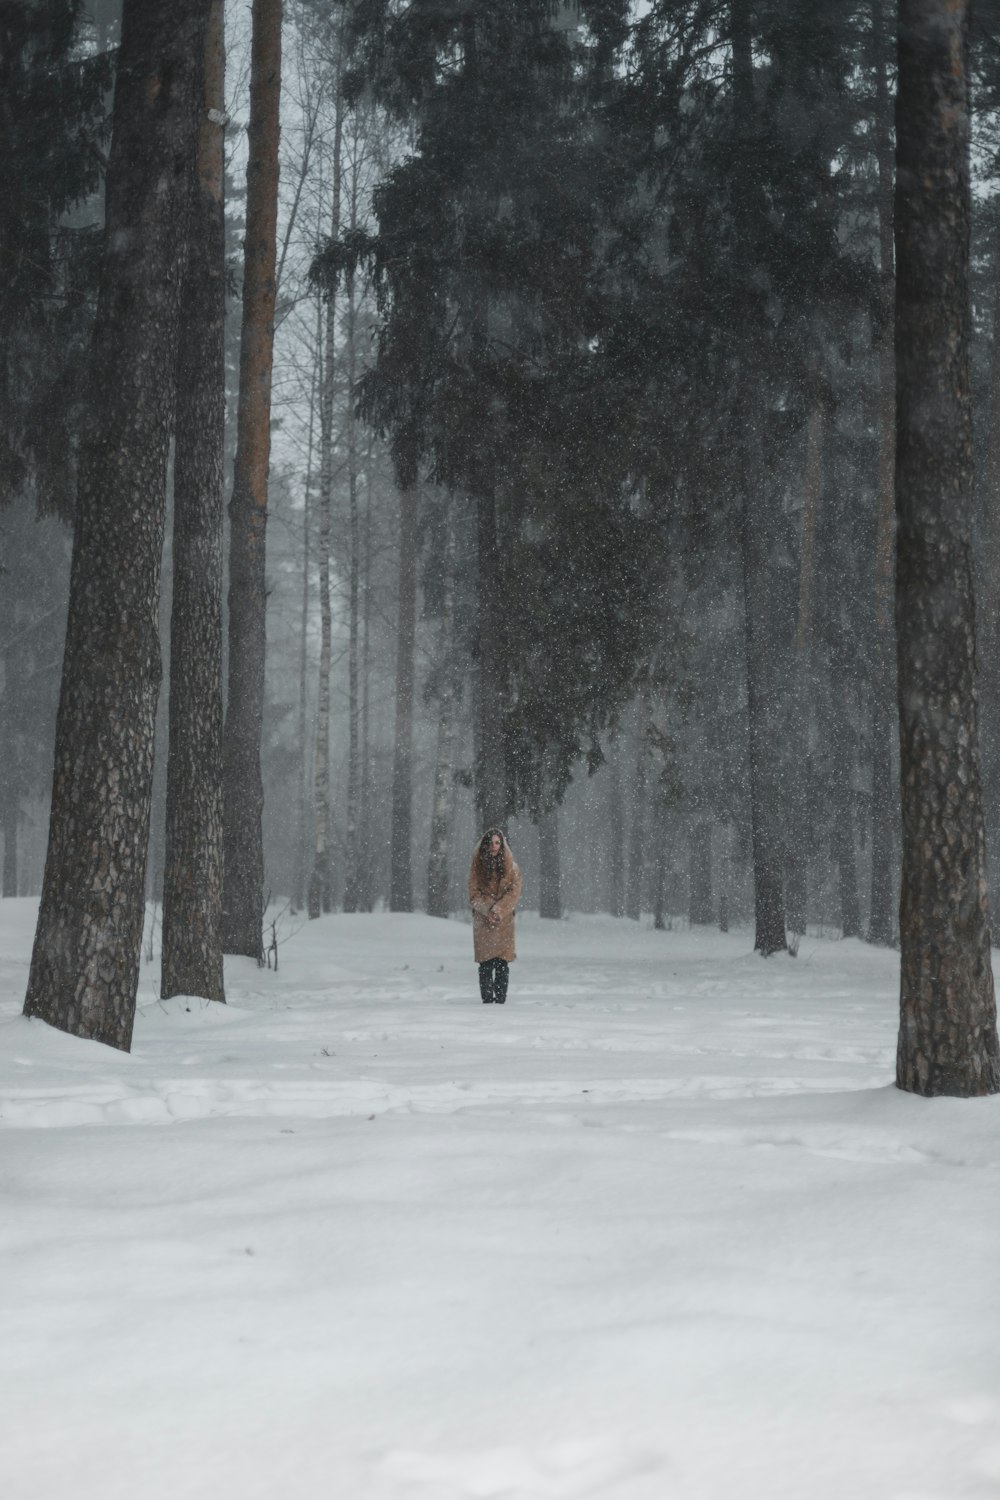 pessoa em jaqueta marrom andando no chão coberto de neve